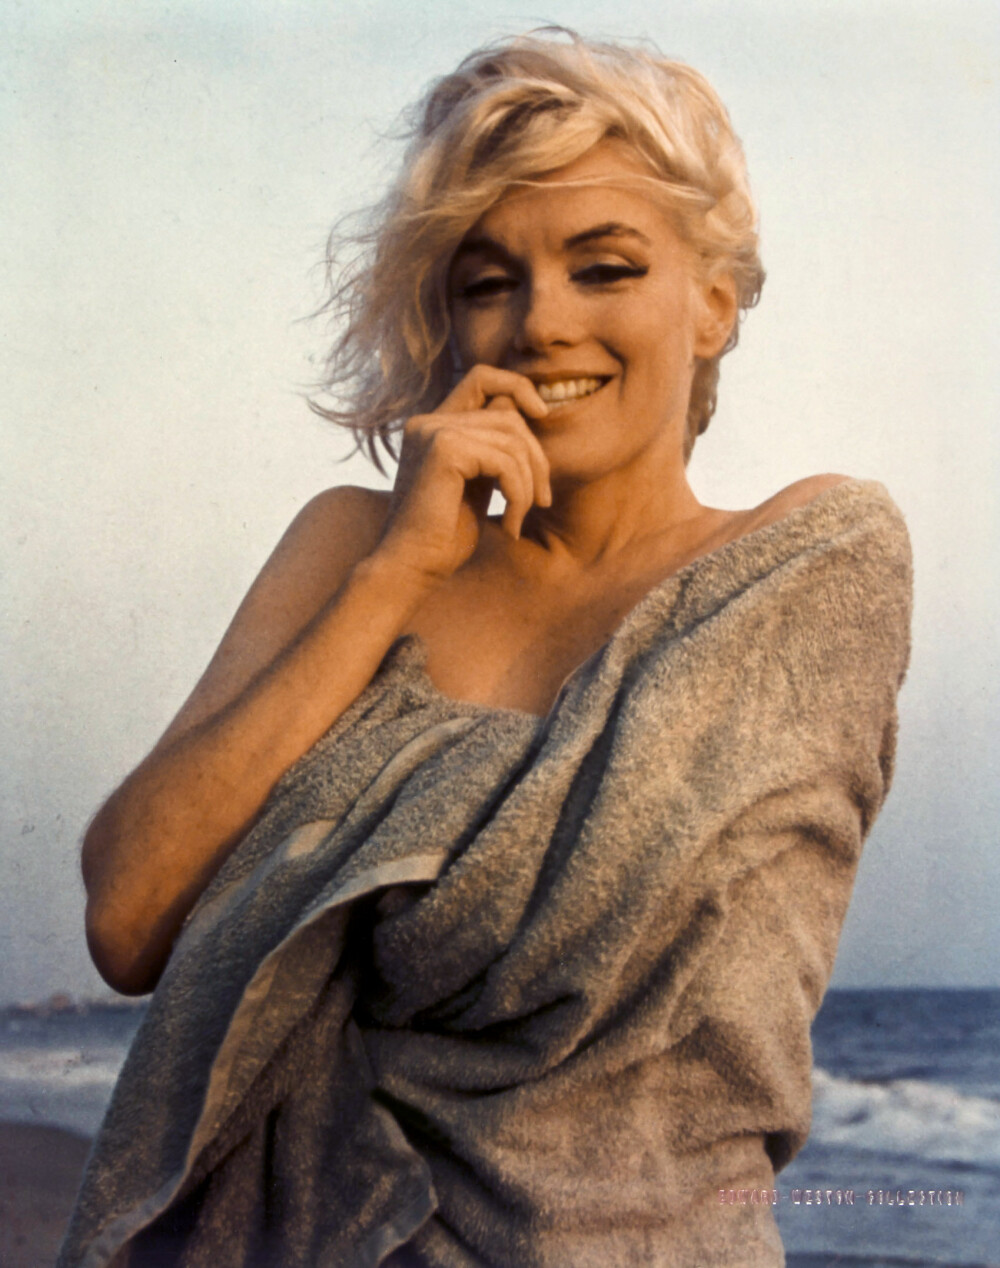 <b>SISTE BILDE:</b> Dette er det siste kjente bildet av Marilyn før hennes tragiske død. 